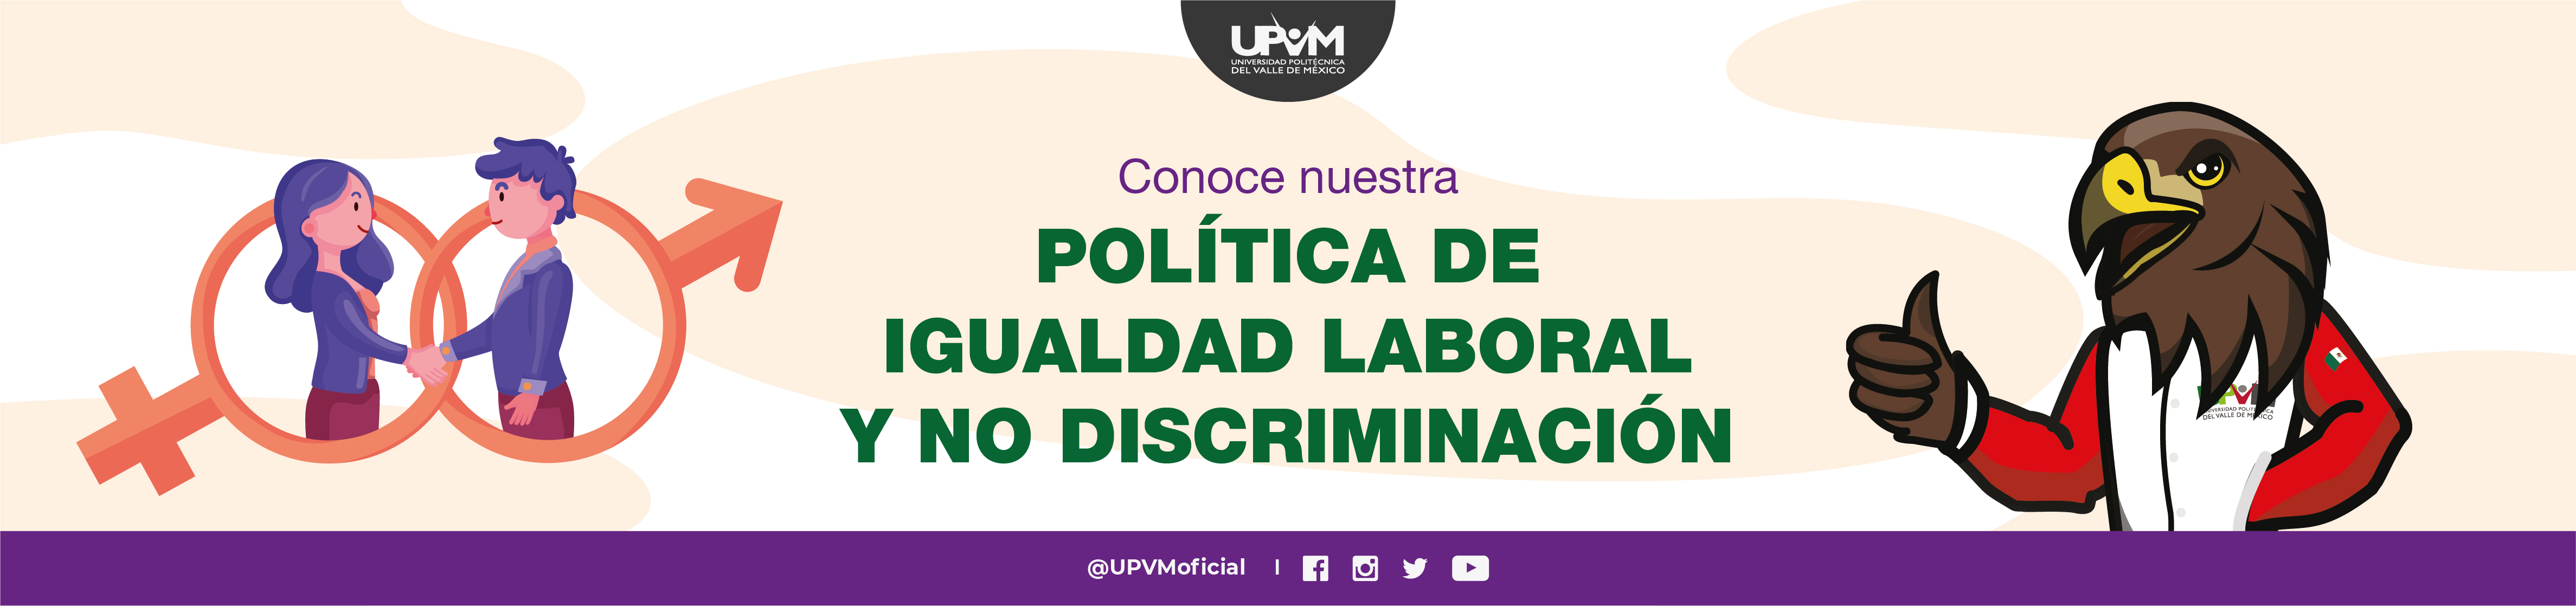 Política de igualdad laboral y no discriminación